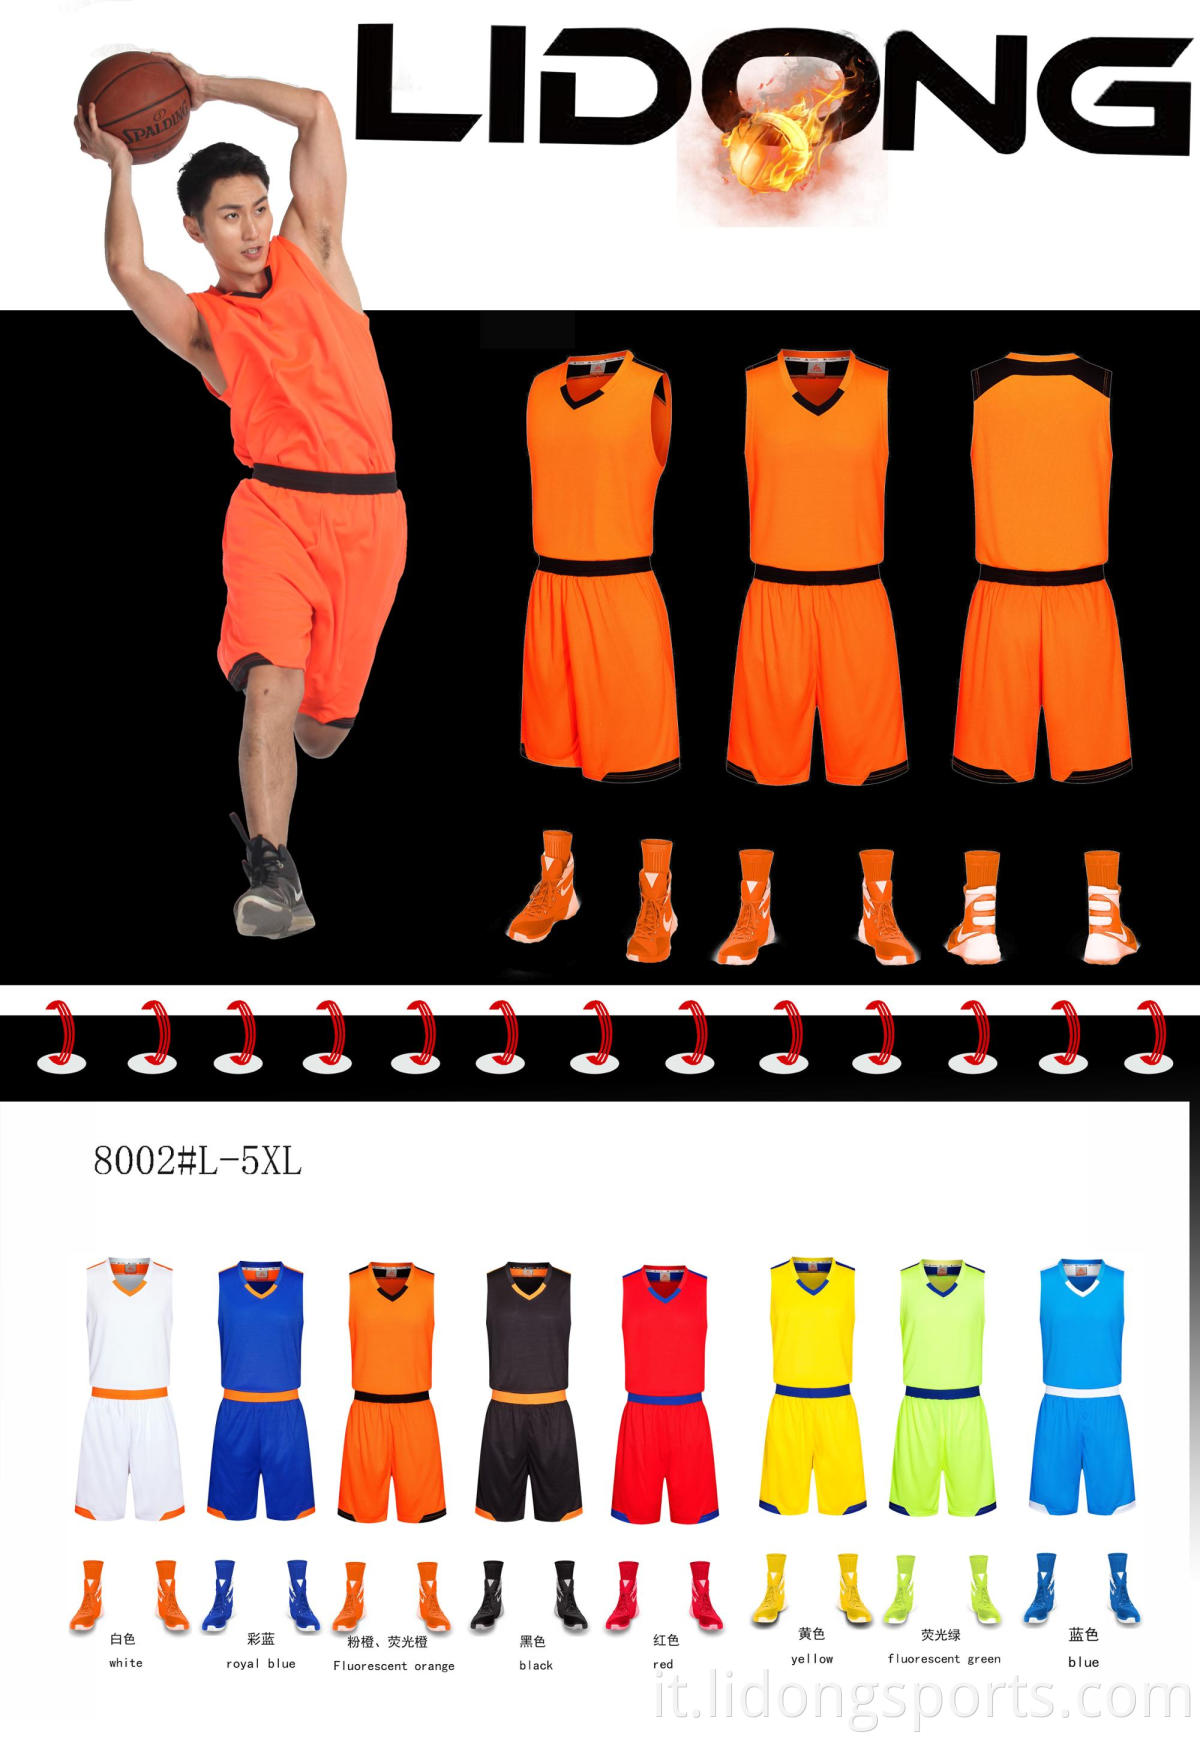 Ultimo design della maglia da basket Colore arancione Sublimazione personalizzata Nuovo Style Basketball Uniforms